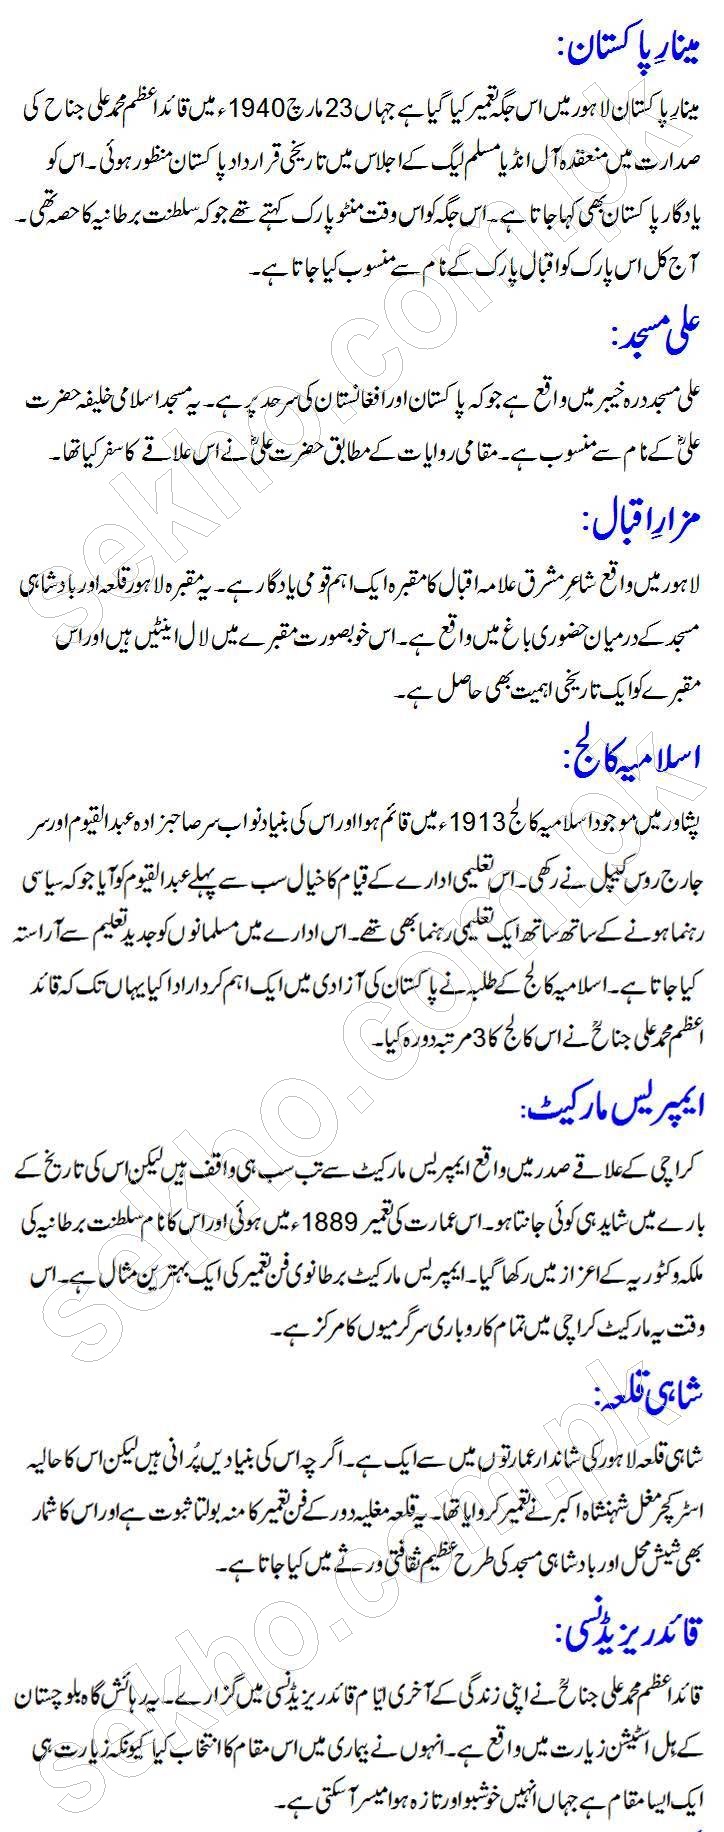 Urdu essays in urdu language